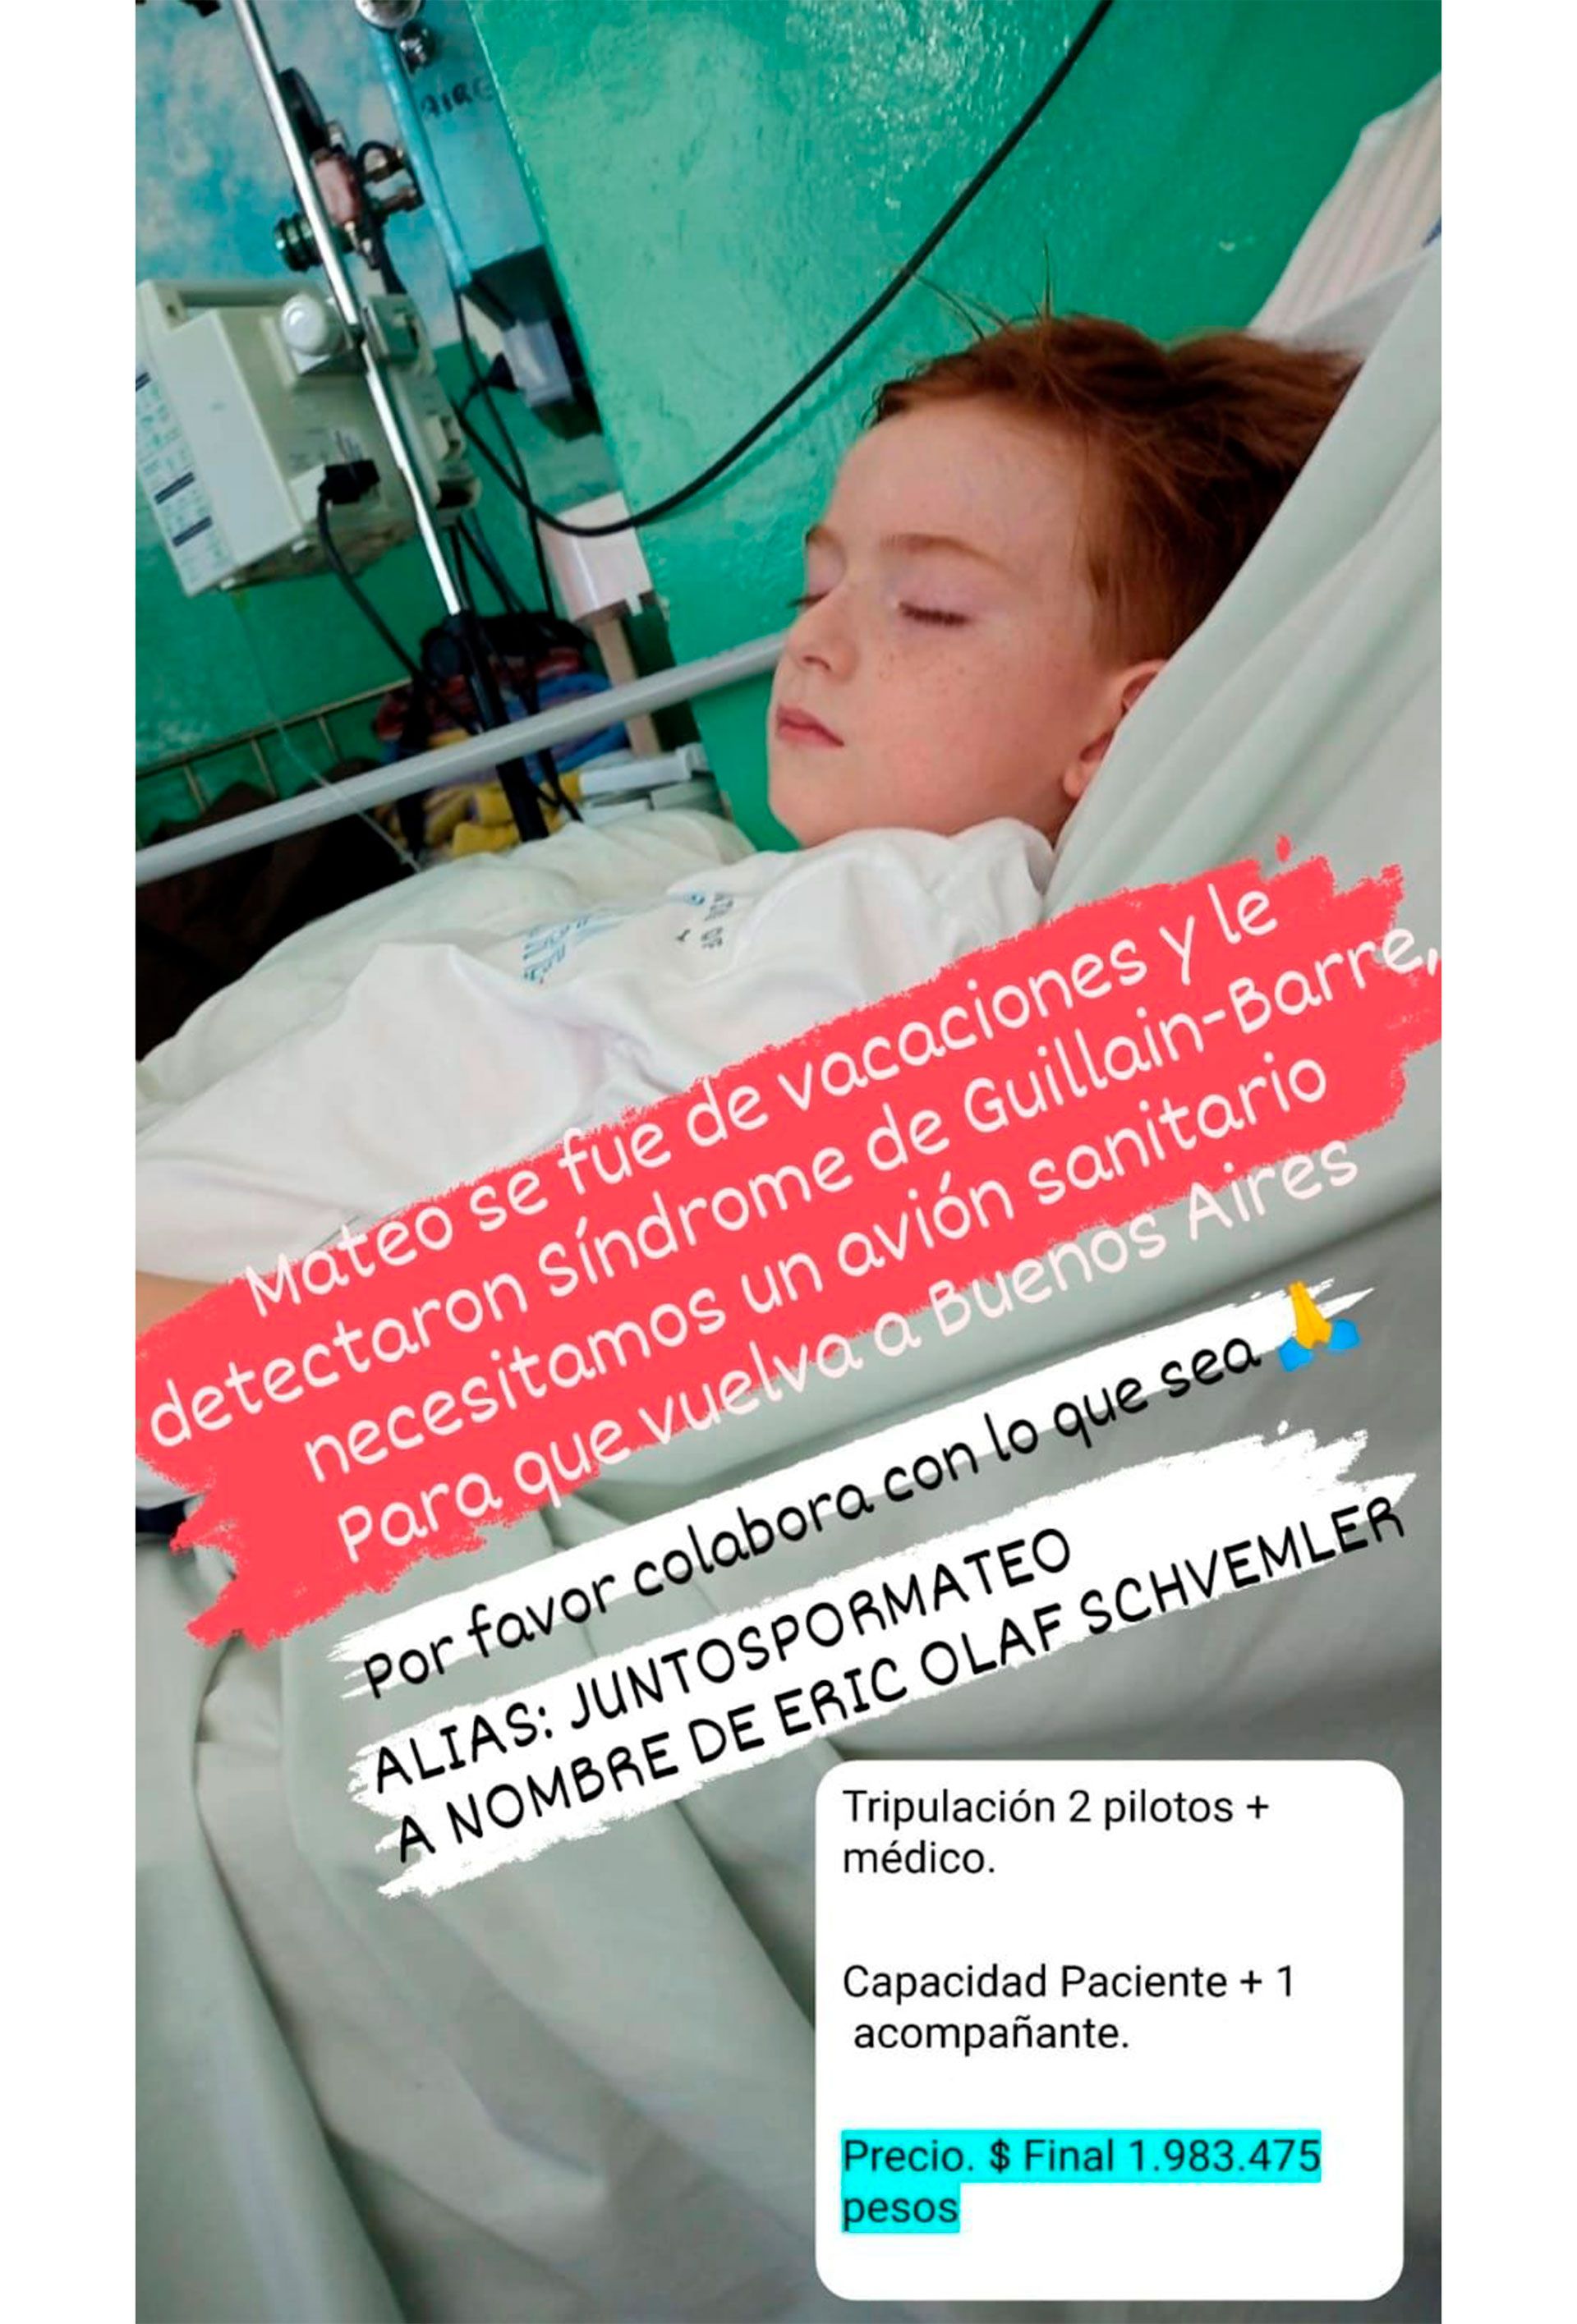 #JuntosPorMateo, la campaña para conseguir traslado sanitario de un niño con Síndrome de Guillain-Barre